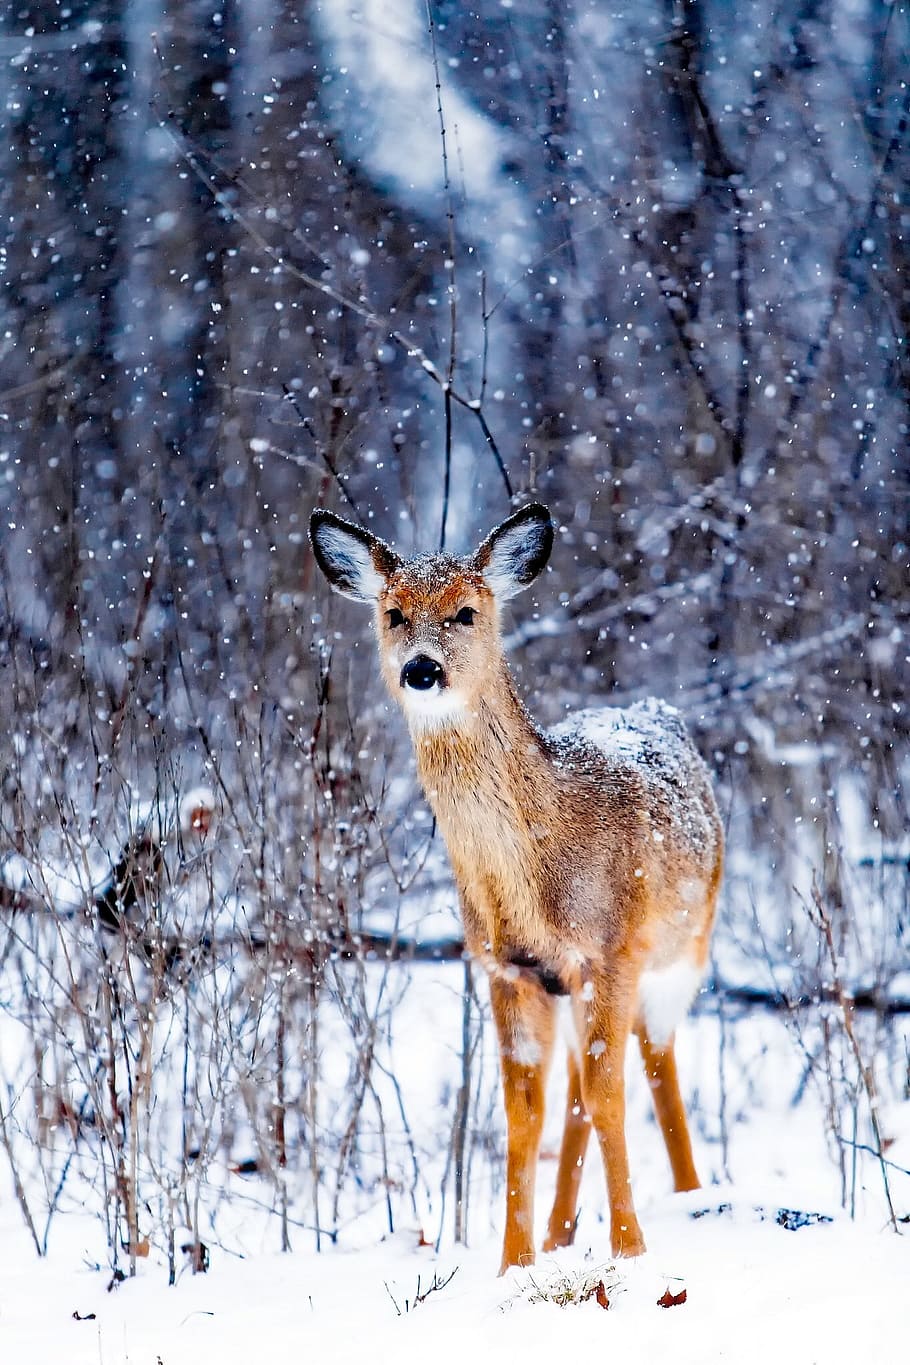 茶色, 鹿, 立っている, 雪, 表面, 冬, 動物, 野生動物, 風景, 自然